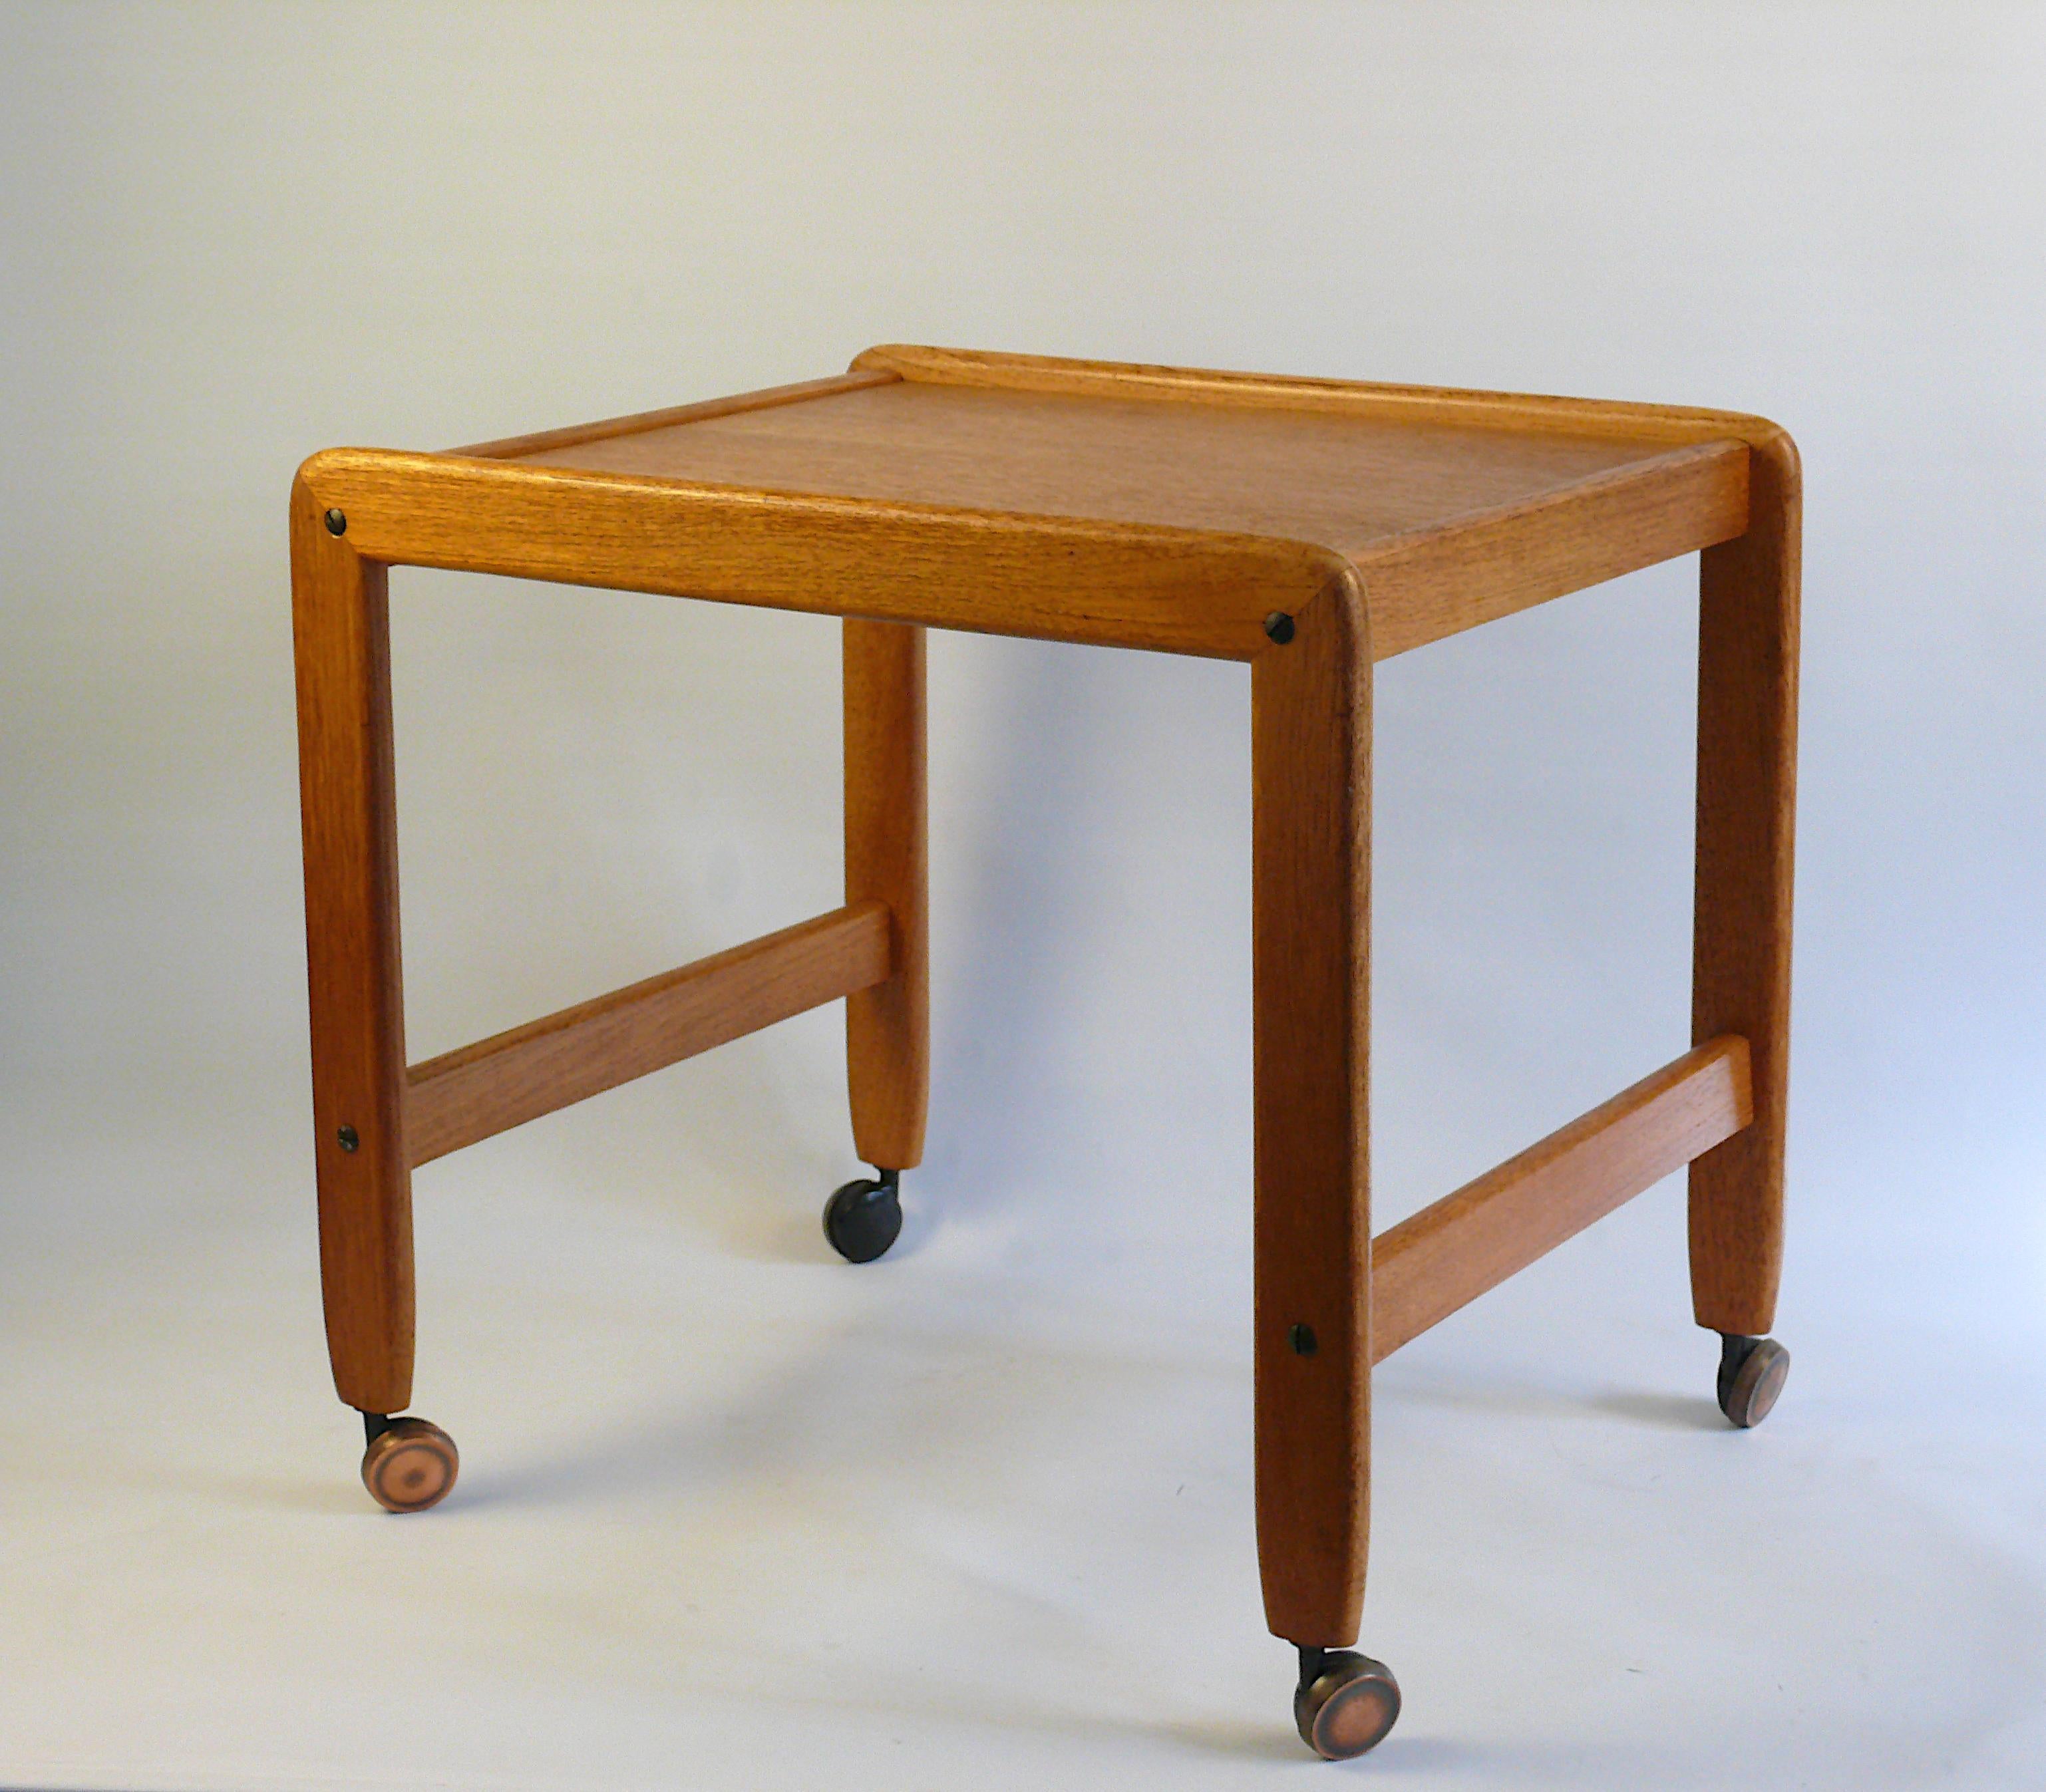 Gut erhaltener Beistelltisch/Servierwagen aus Teakholz in dänischem Design aus den 1960er Jahren. Die Holzprofile haben abgerundete Kanten. Der Tisch ist zusammengeschraubt und kann bei Bedarf demontiert werden - er wird zusammengebaut versendet.